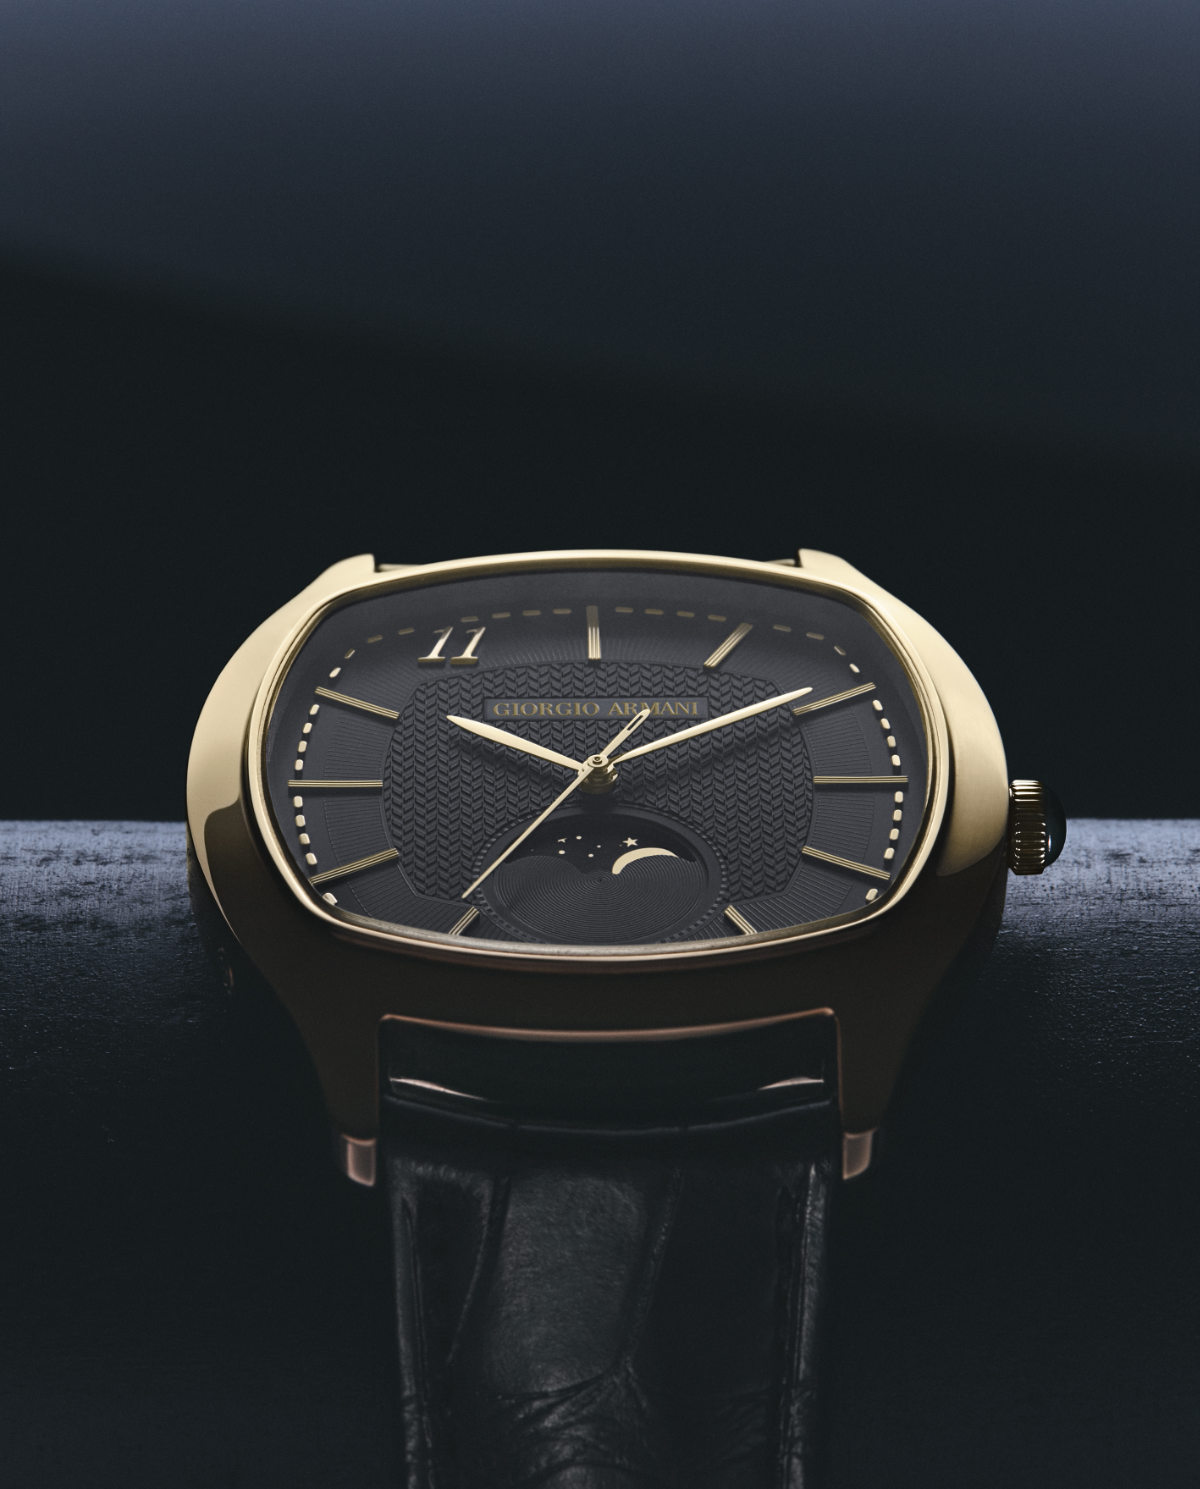 Giorgio Armani Presents “Giorgio Arman 11”, The New Watch For Men And Women